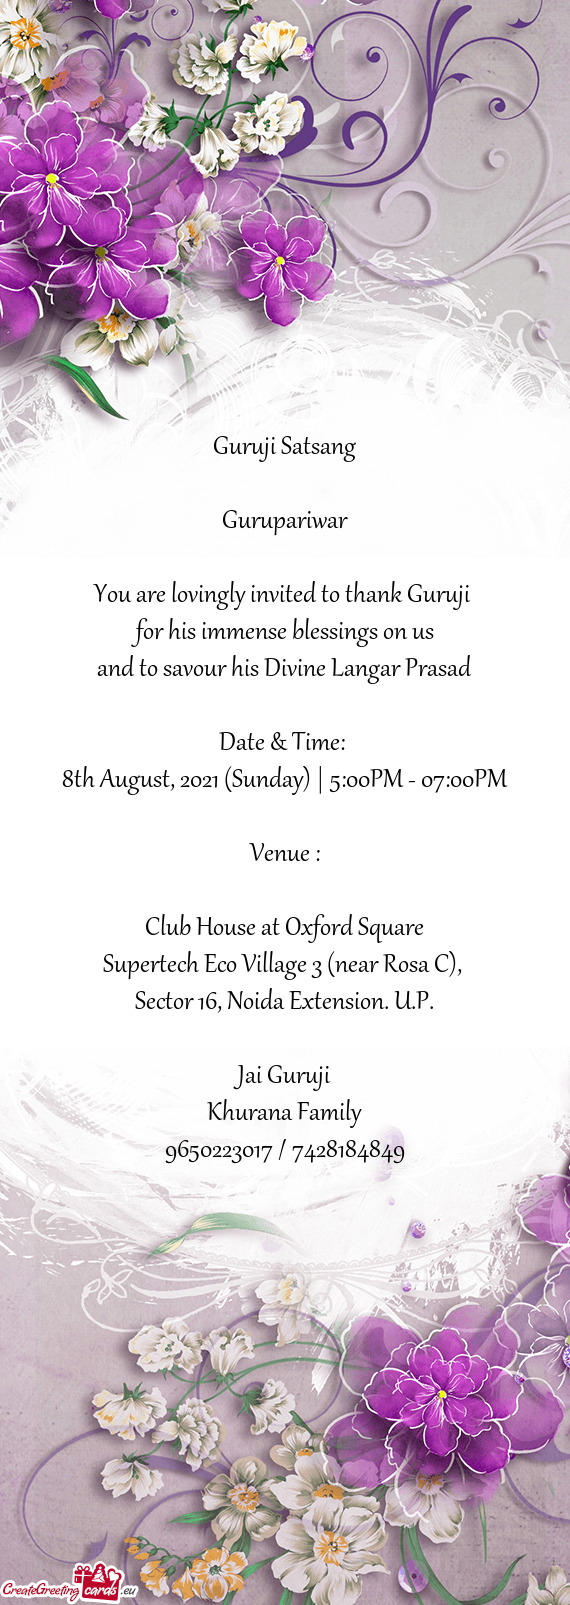 You are lovingly invited to thank Guruji